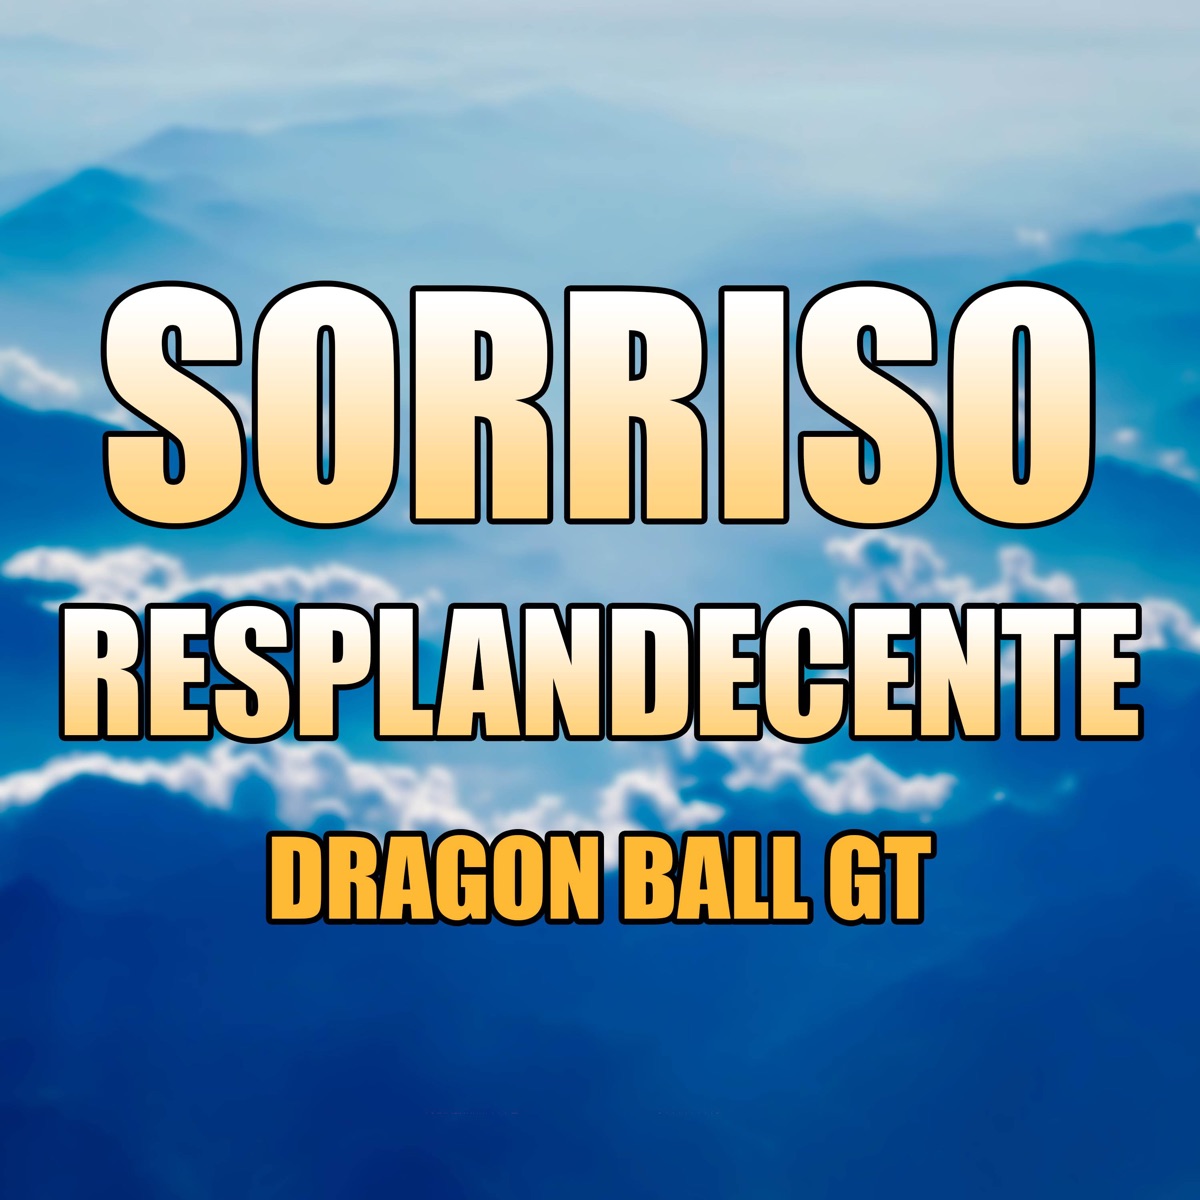 SORRISO RESPLANDECENTE - Dragon Ball 